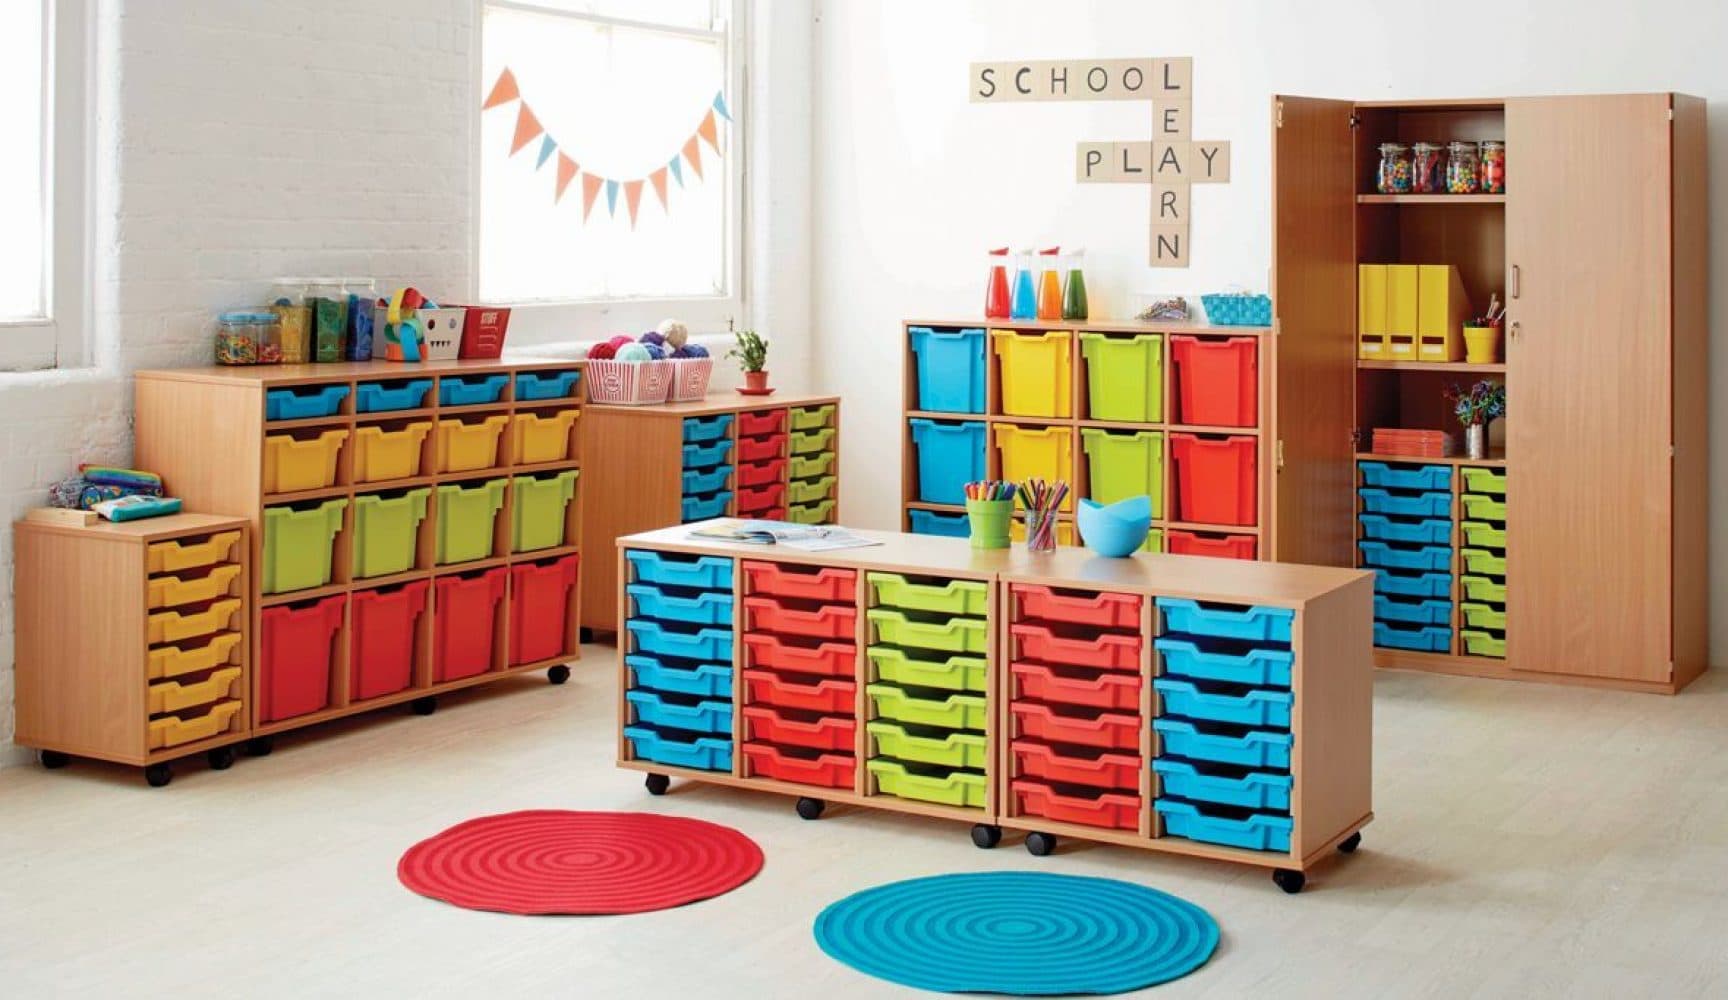 Colourful classroom furniture